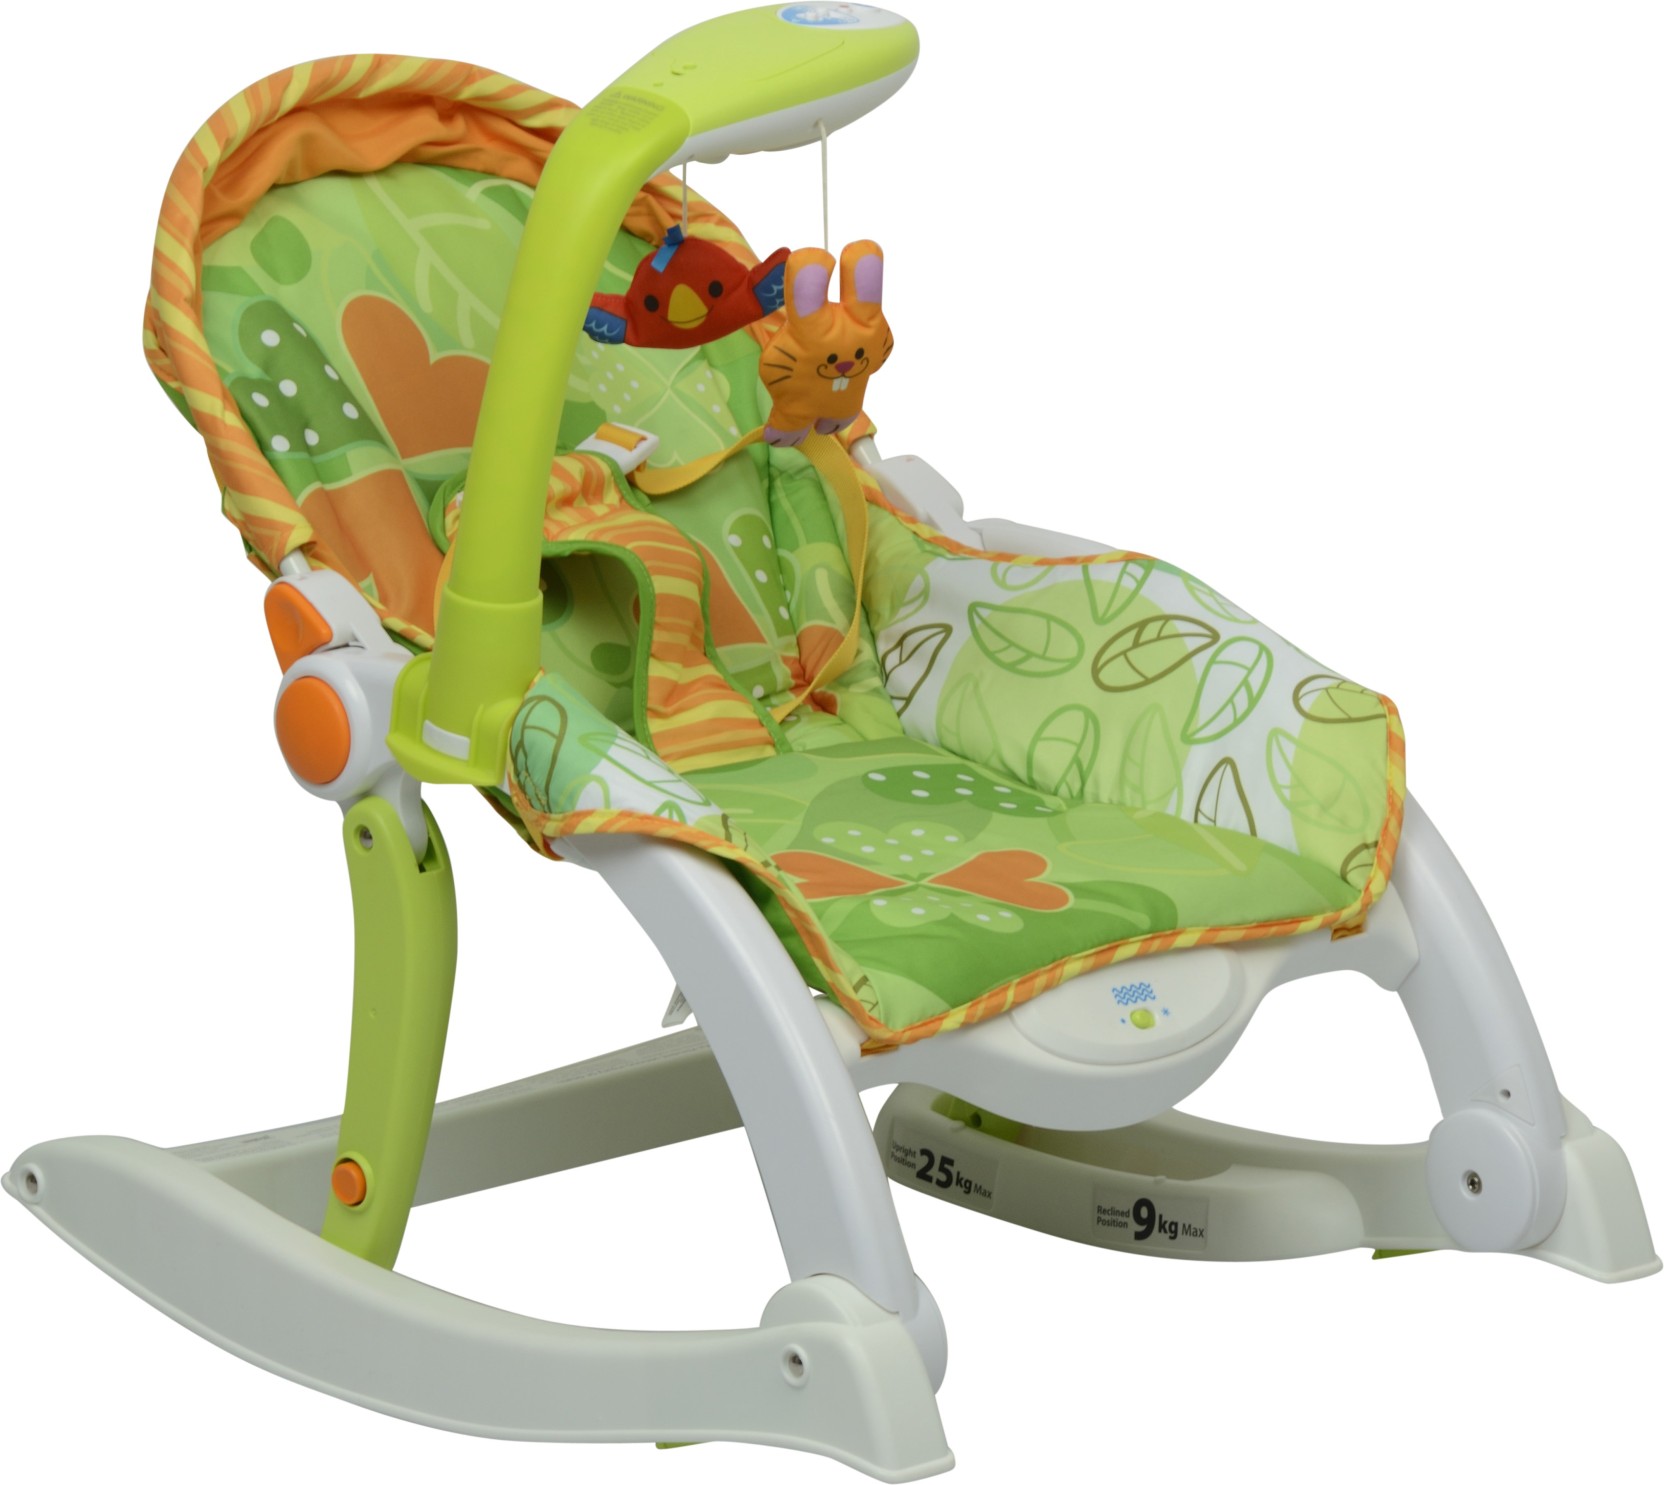 Winfun Winfun Grow With Me Rocking Chair Newborn To Toddler